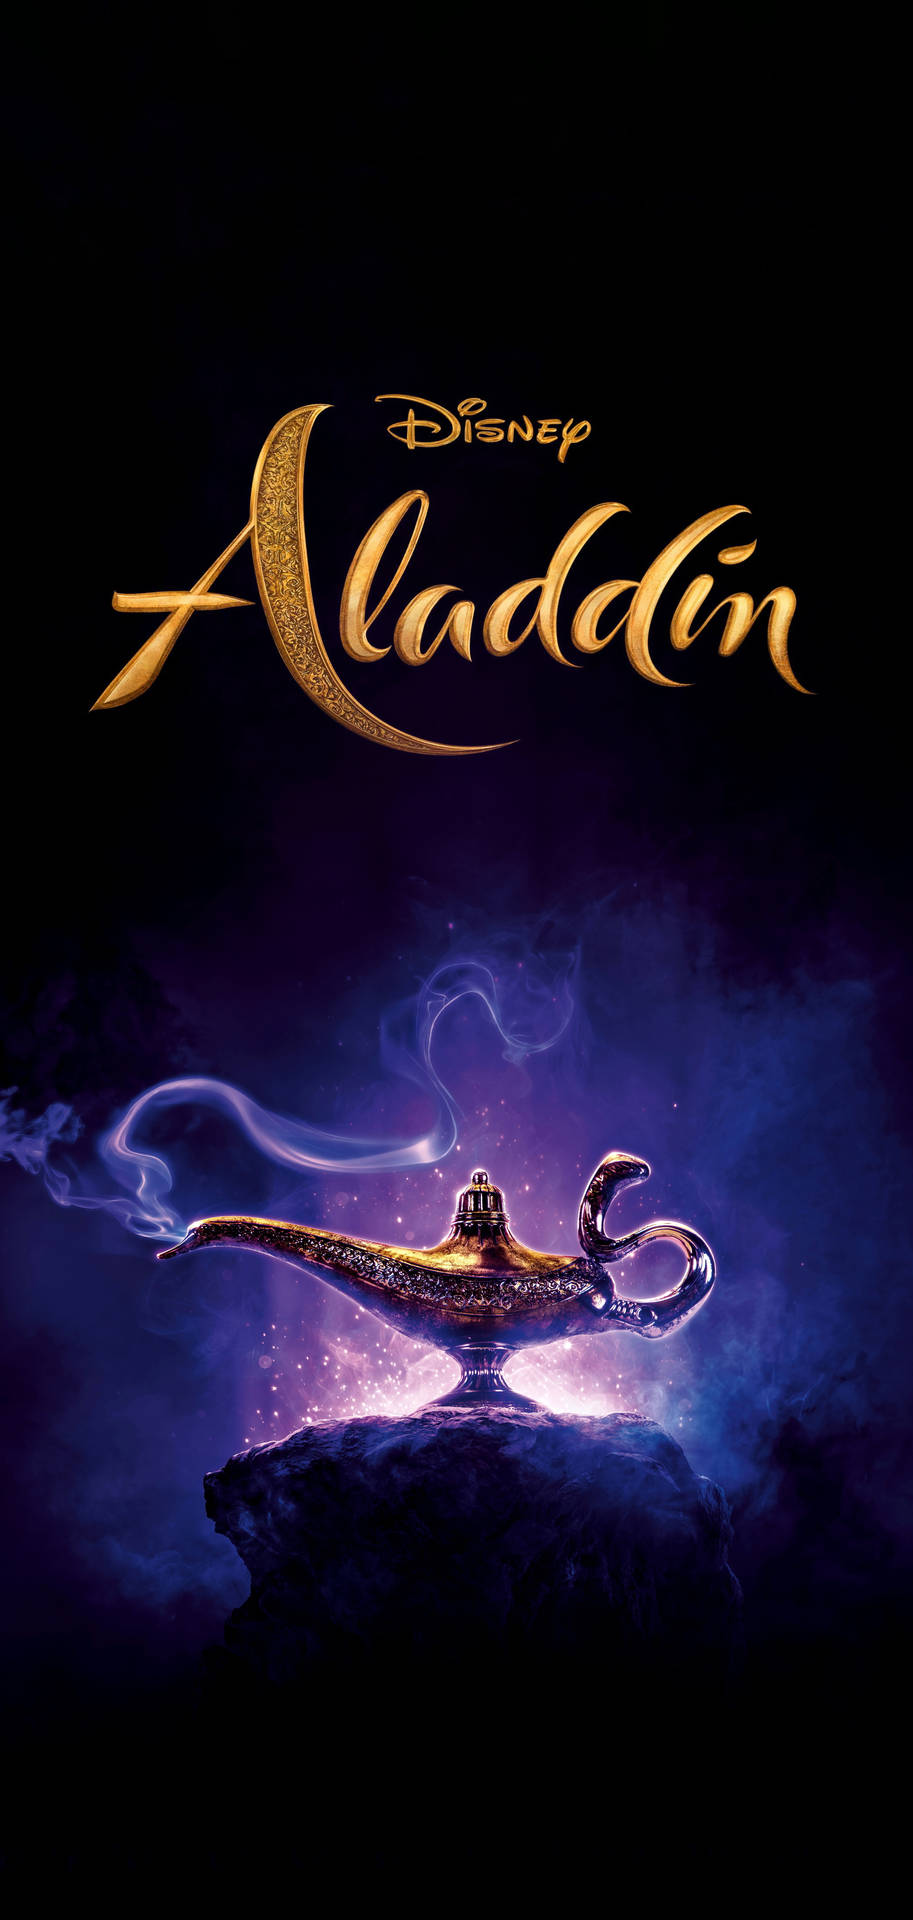 Bakgrundsutseendeför Mobiltelefon Med Aladdin Live Action Från Disney. Wallpaper